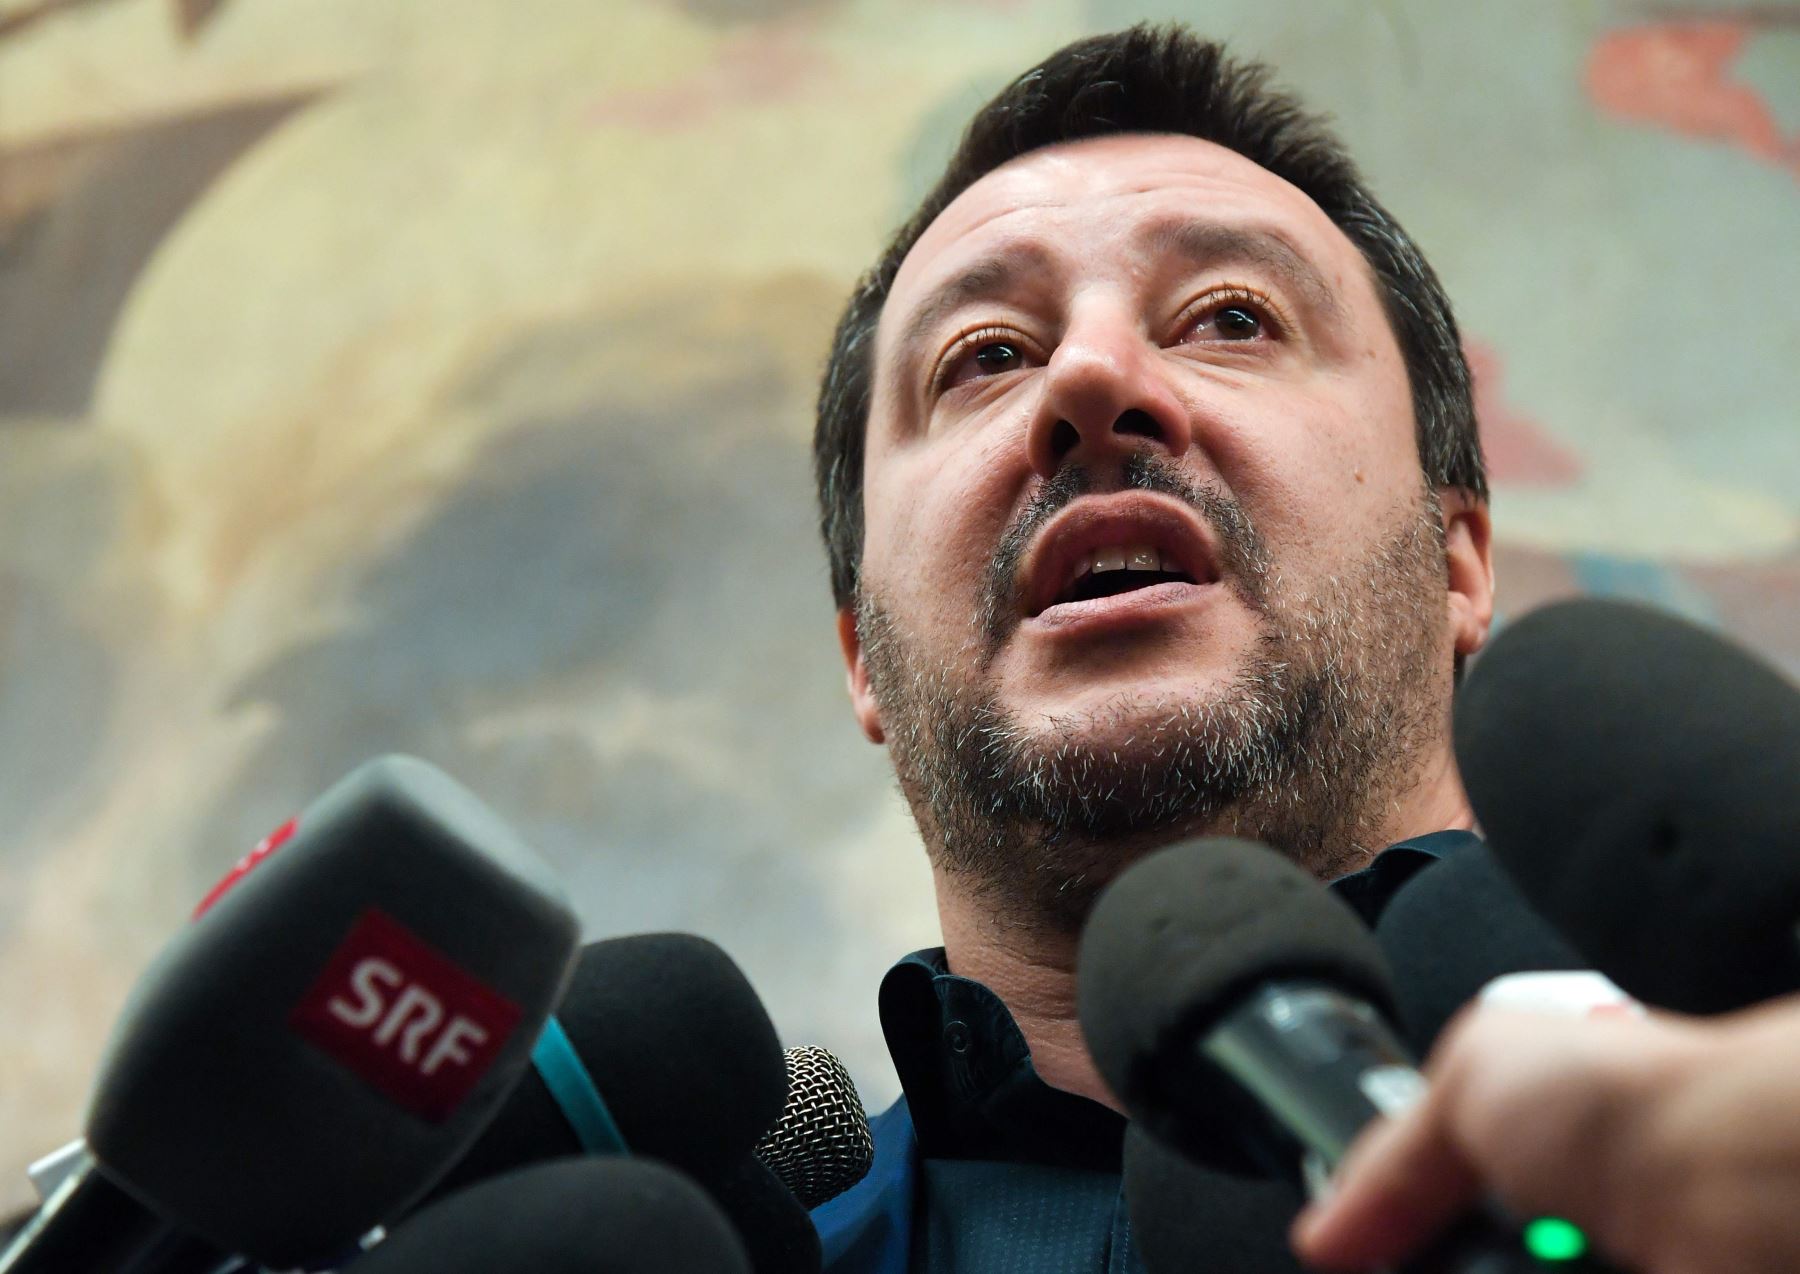 El ministro del Interior y viceprimer ministro de Italia, Matteo Salvini, habla durante una conferencia de prensa el 11 de febrero del 2019 en Roma. Foto: AFP.